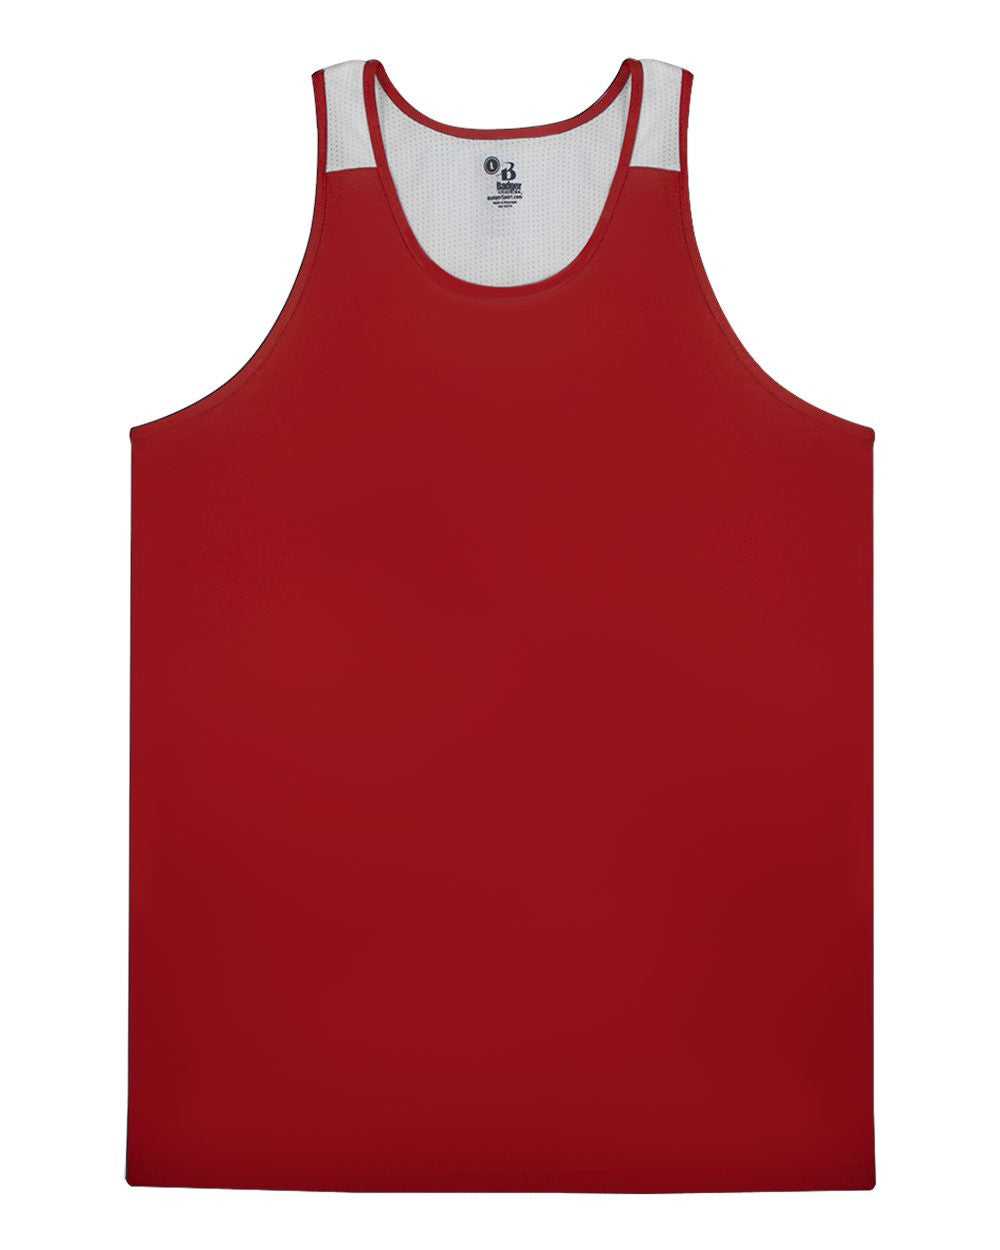 Badger Sport 8668 Ventback Singlet - Red White - HIT a Double - 1